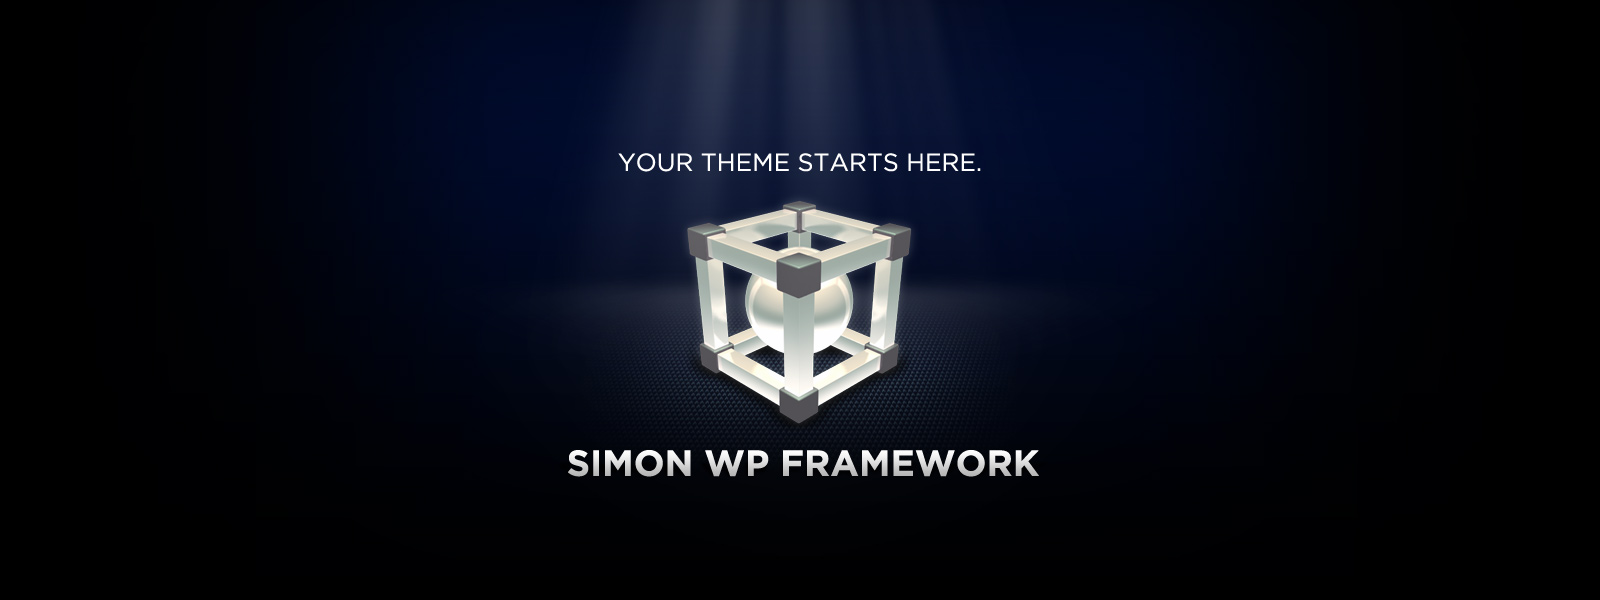 simon-wp-framework-hero